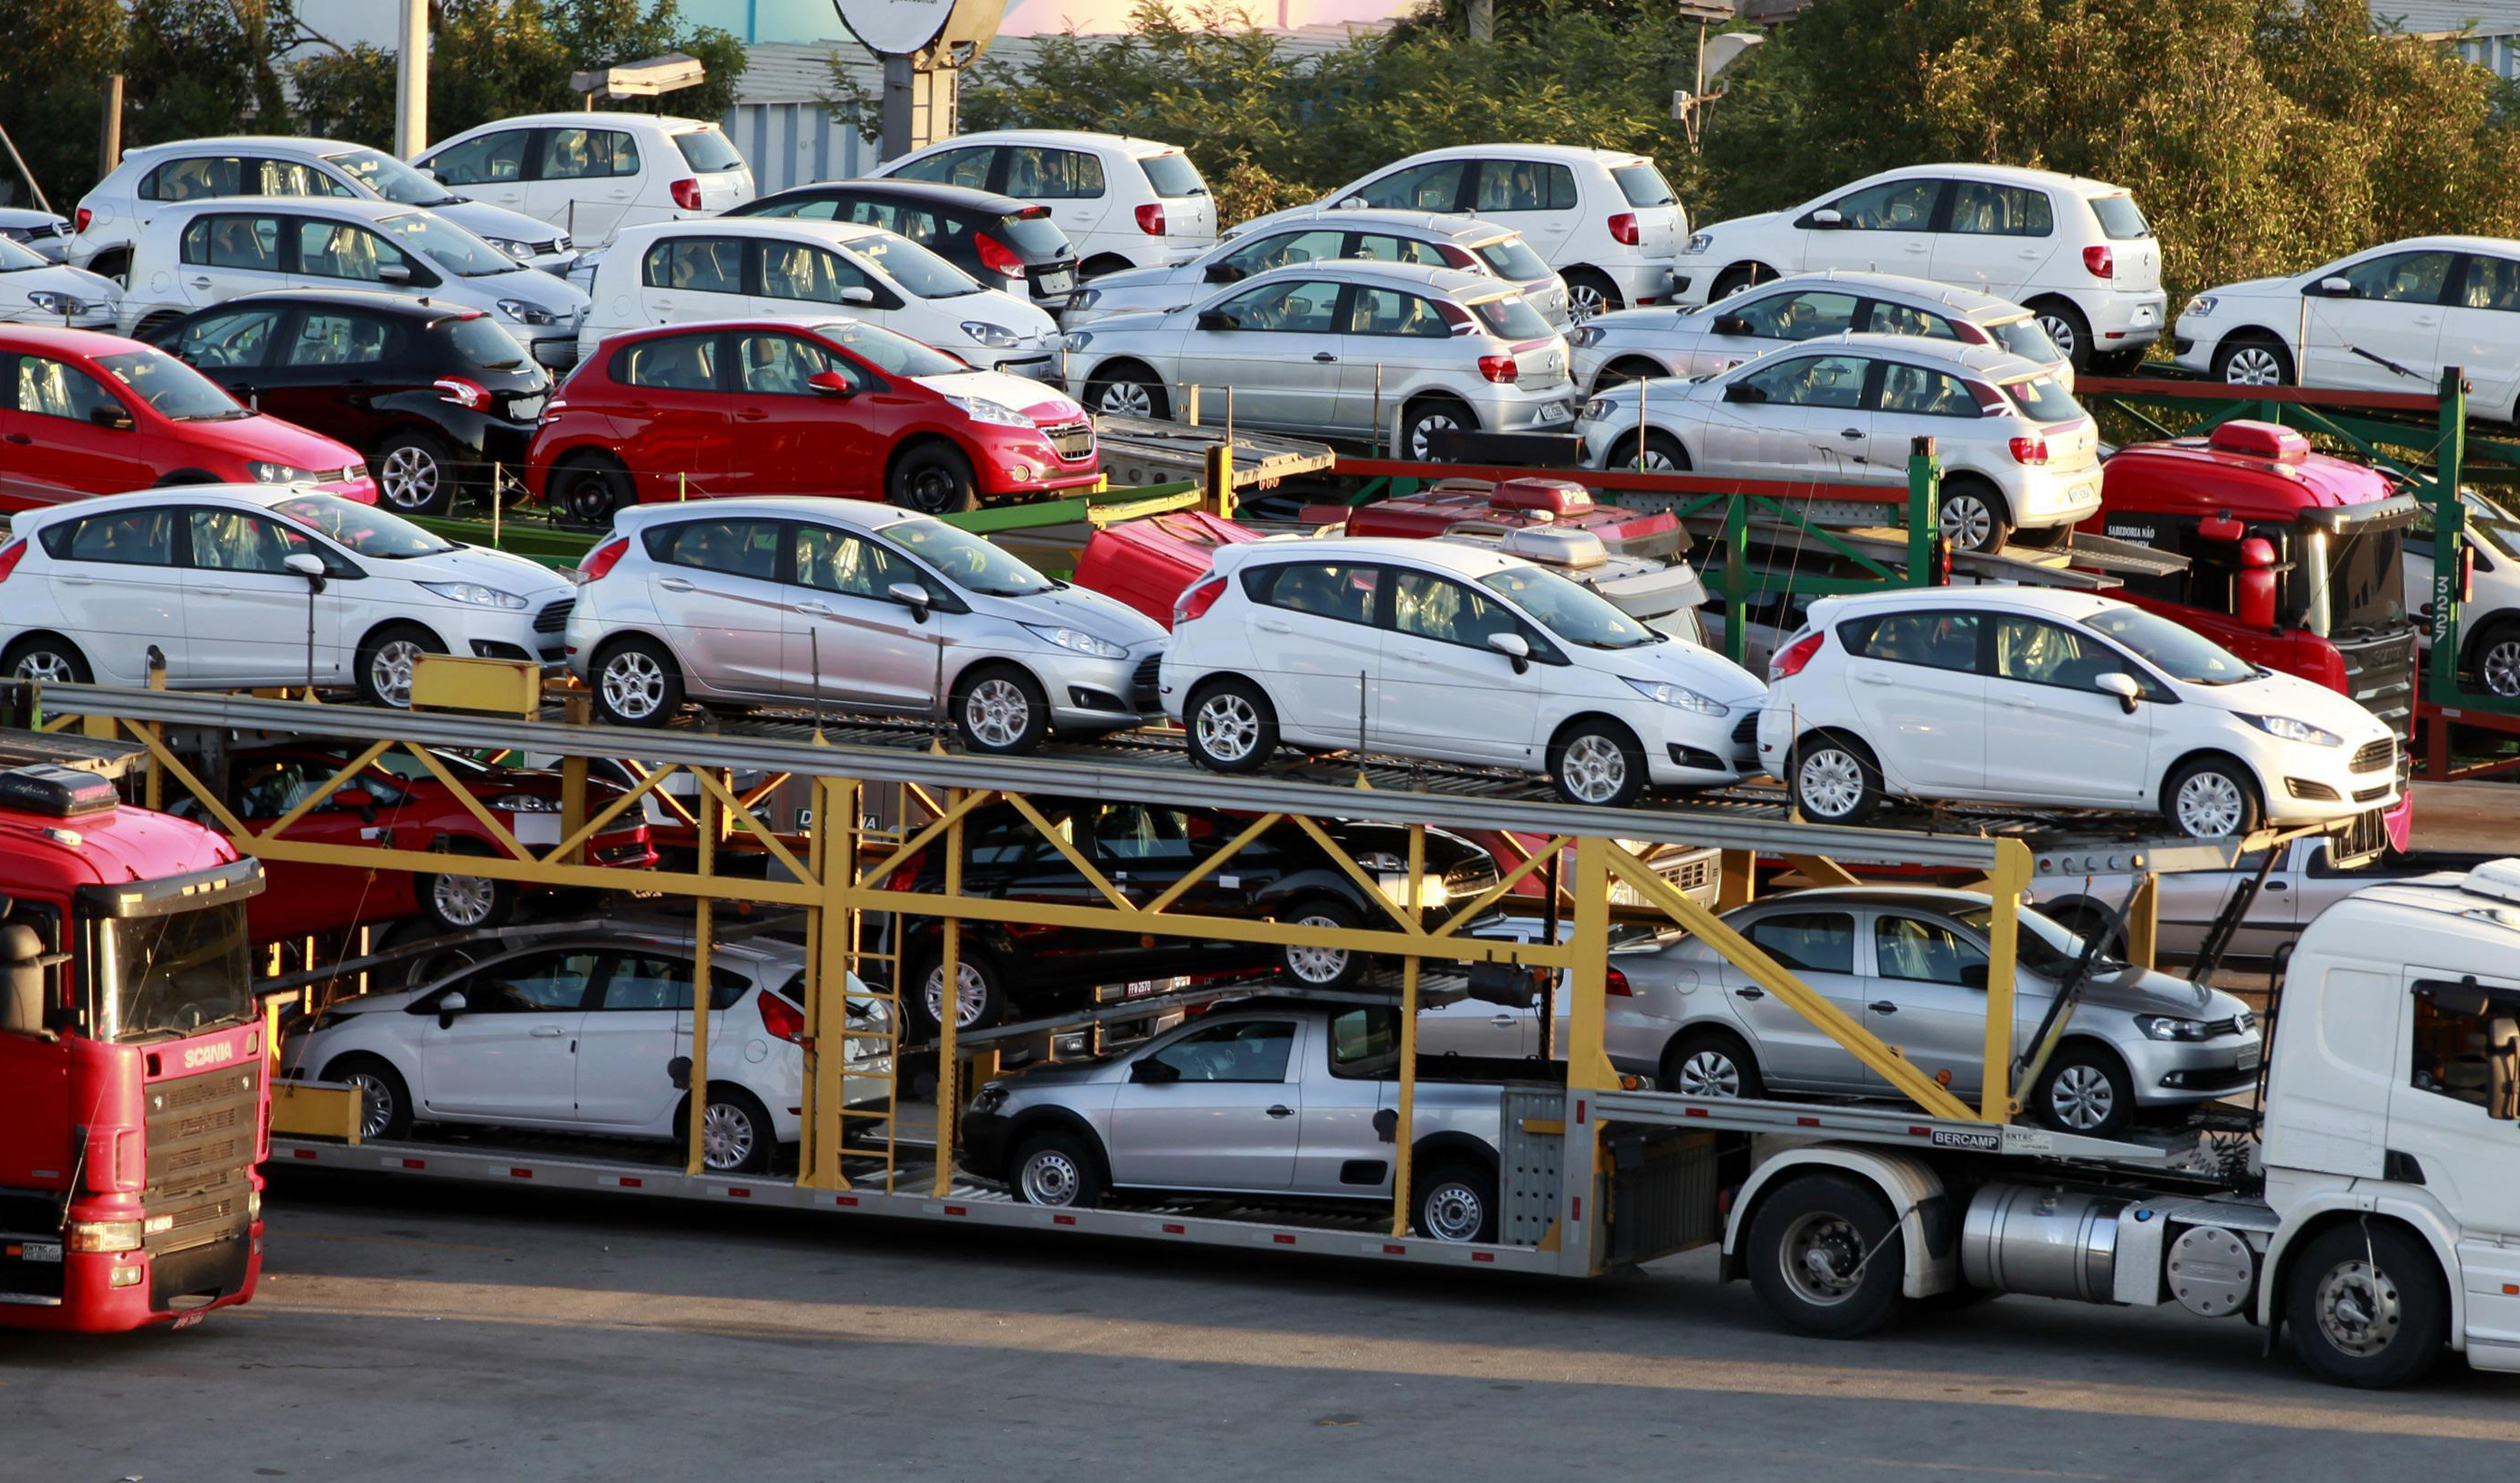 وزارت صمت: واردات خودرو قطعی است